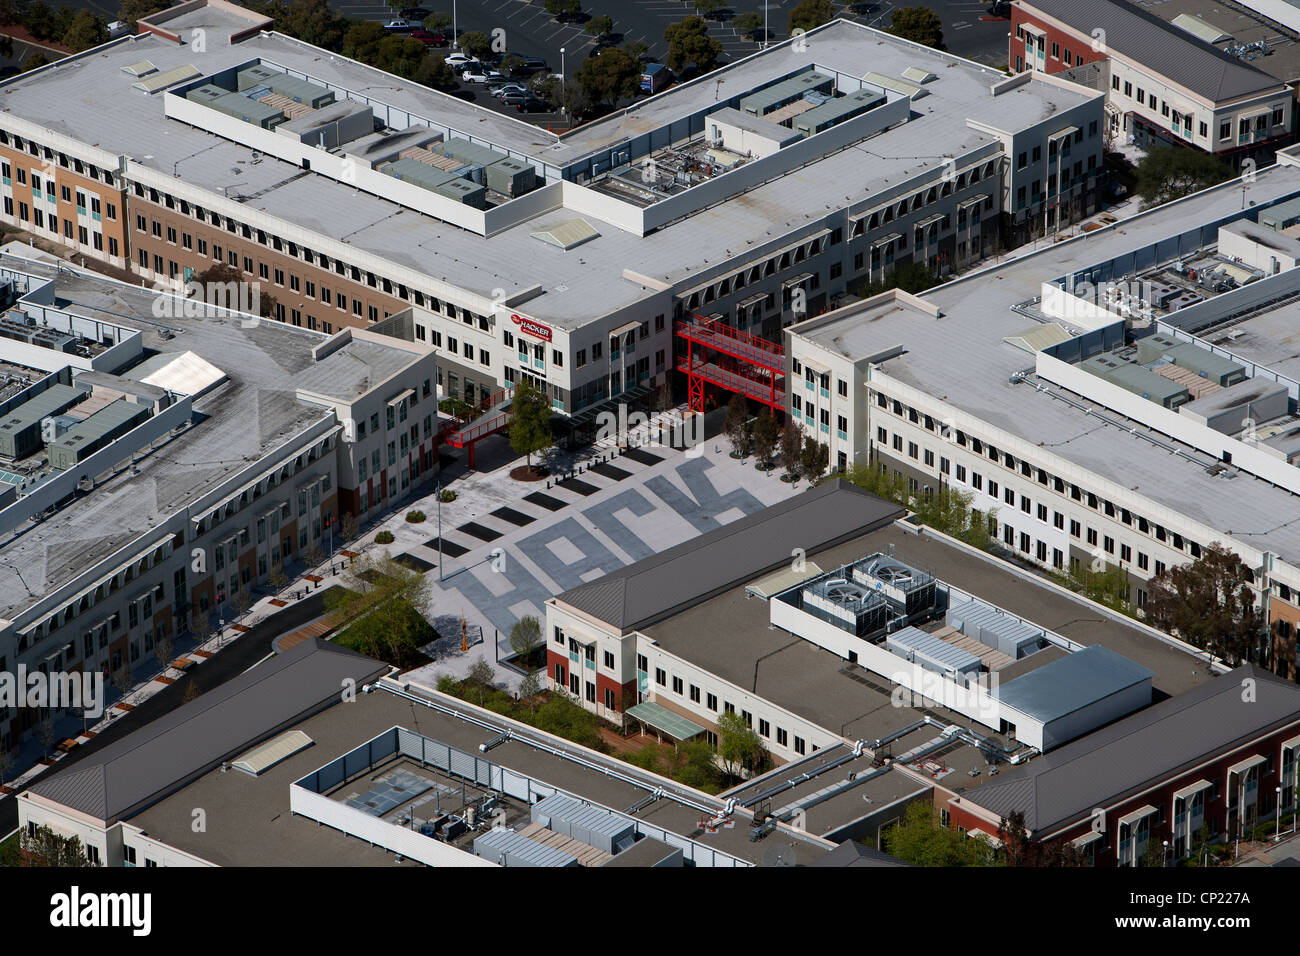 Photographie aérienne de l'Administration centrale, 1 Facebook Hacker Way, Menlo Park, comté de San Mateo, Californie Banque D'Images